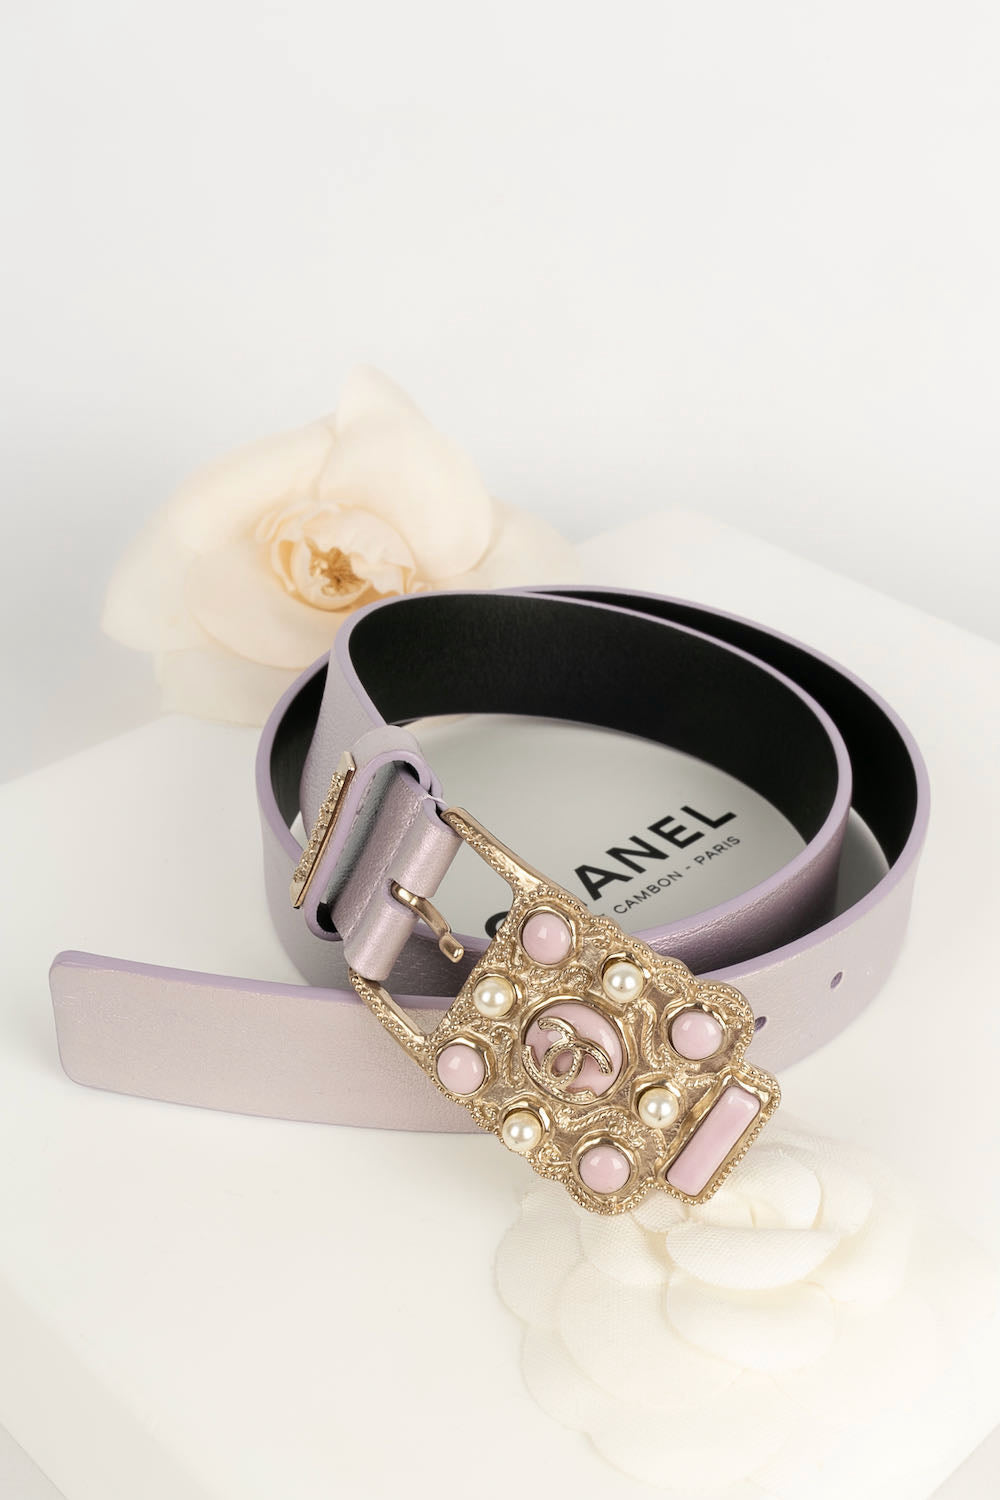 Chanel purple belt